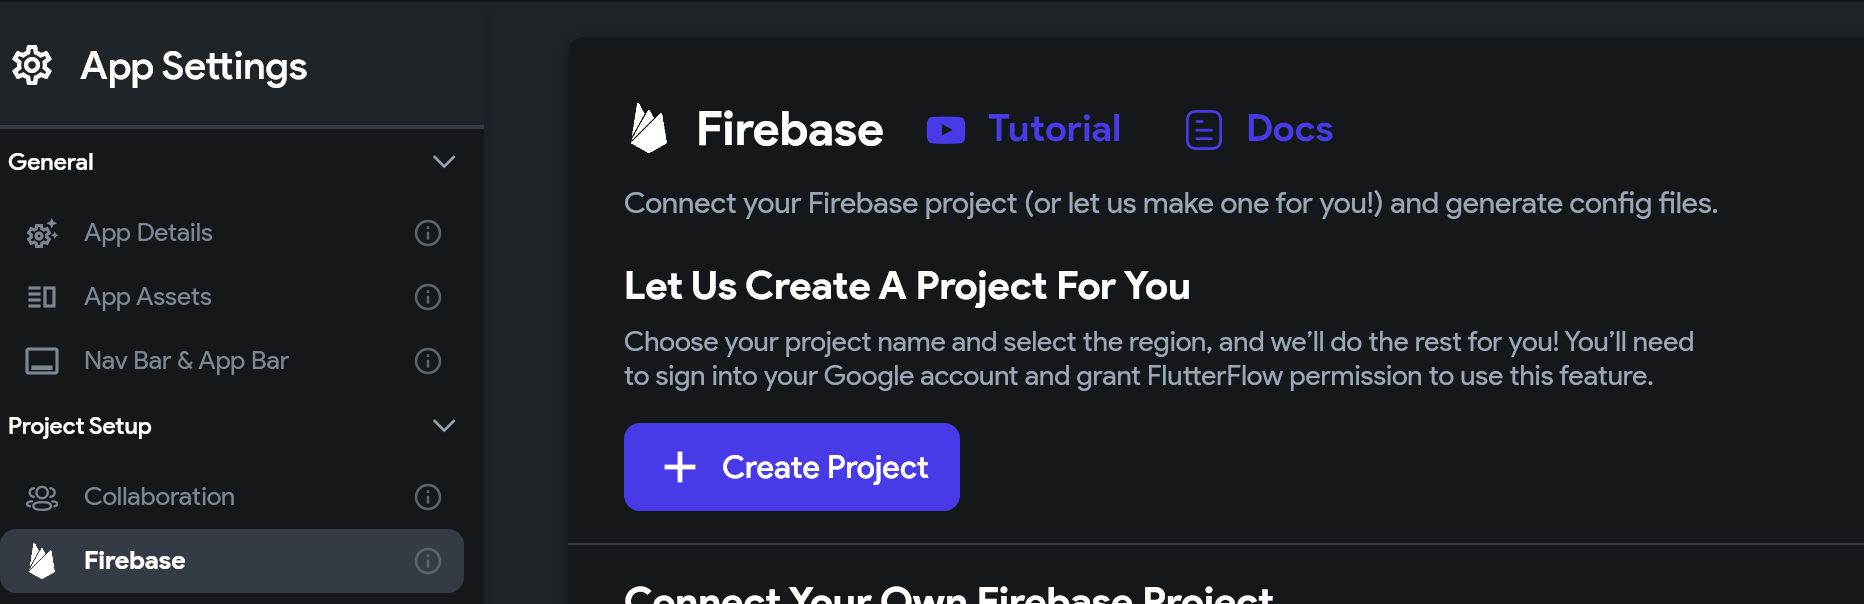 최근에 생긴 Firebase Project 만들기 기능. 